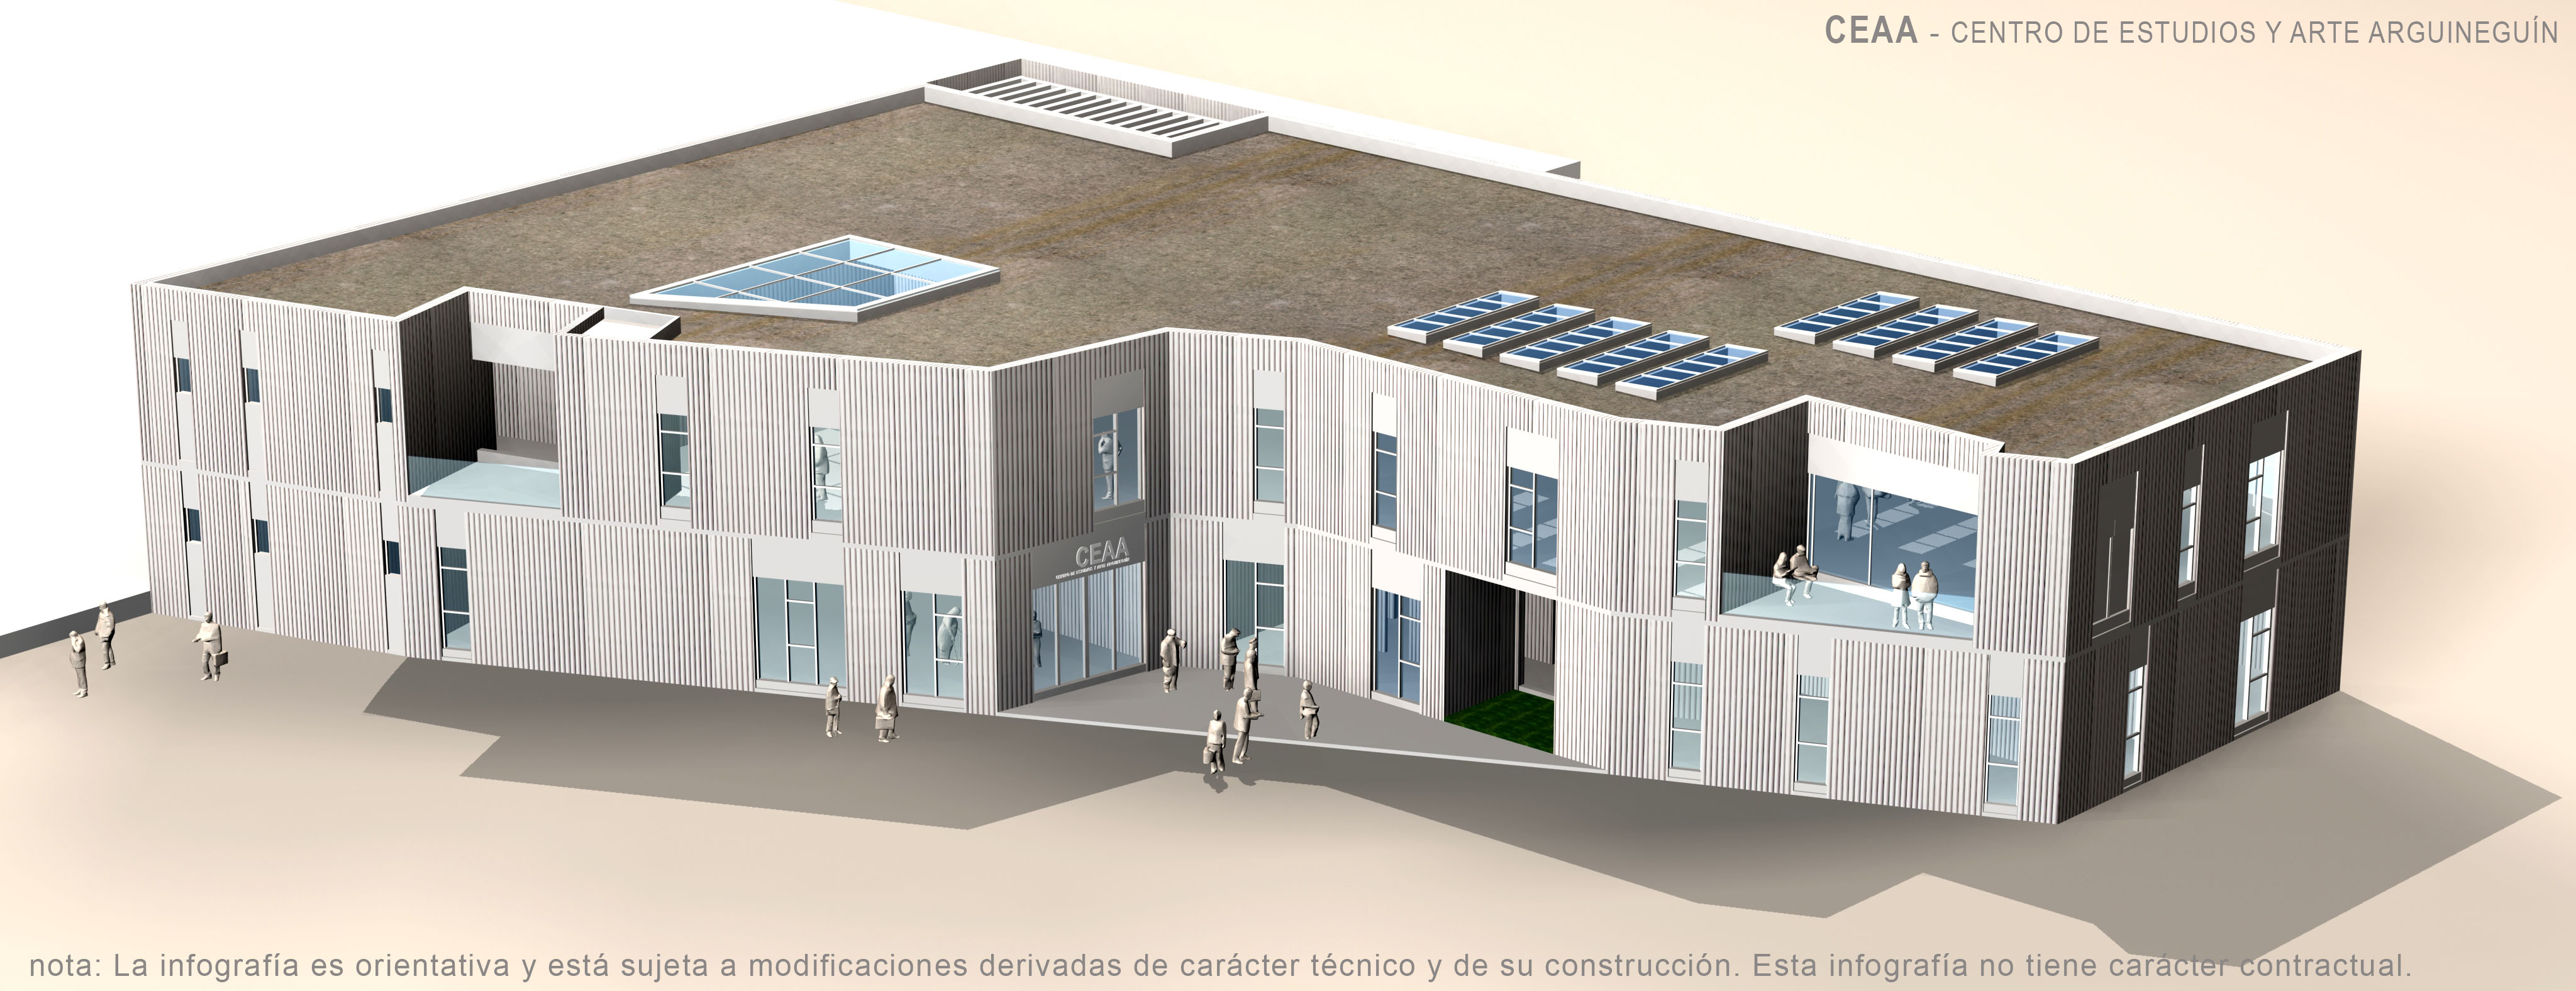 Infografía del Centro de Estudios y Arte Arguineguín / CanariasNoticias.es